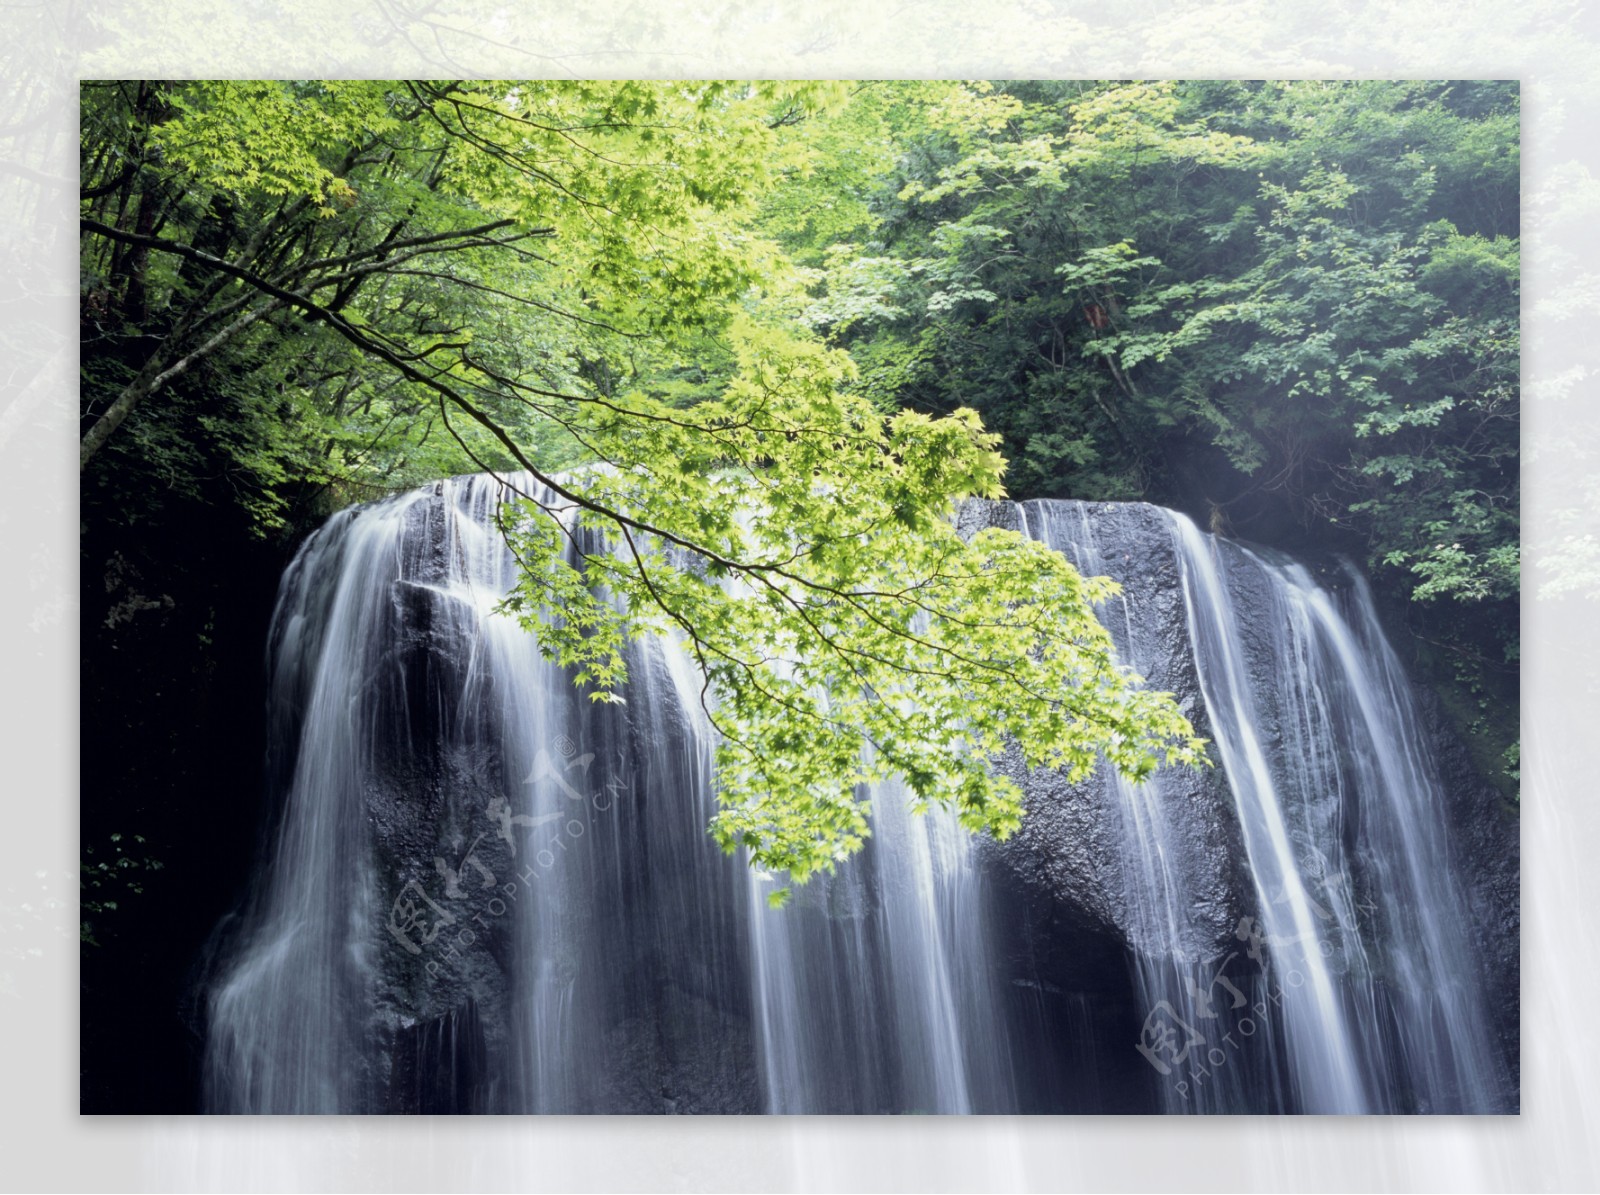 青山绿水瀑布景色图片